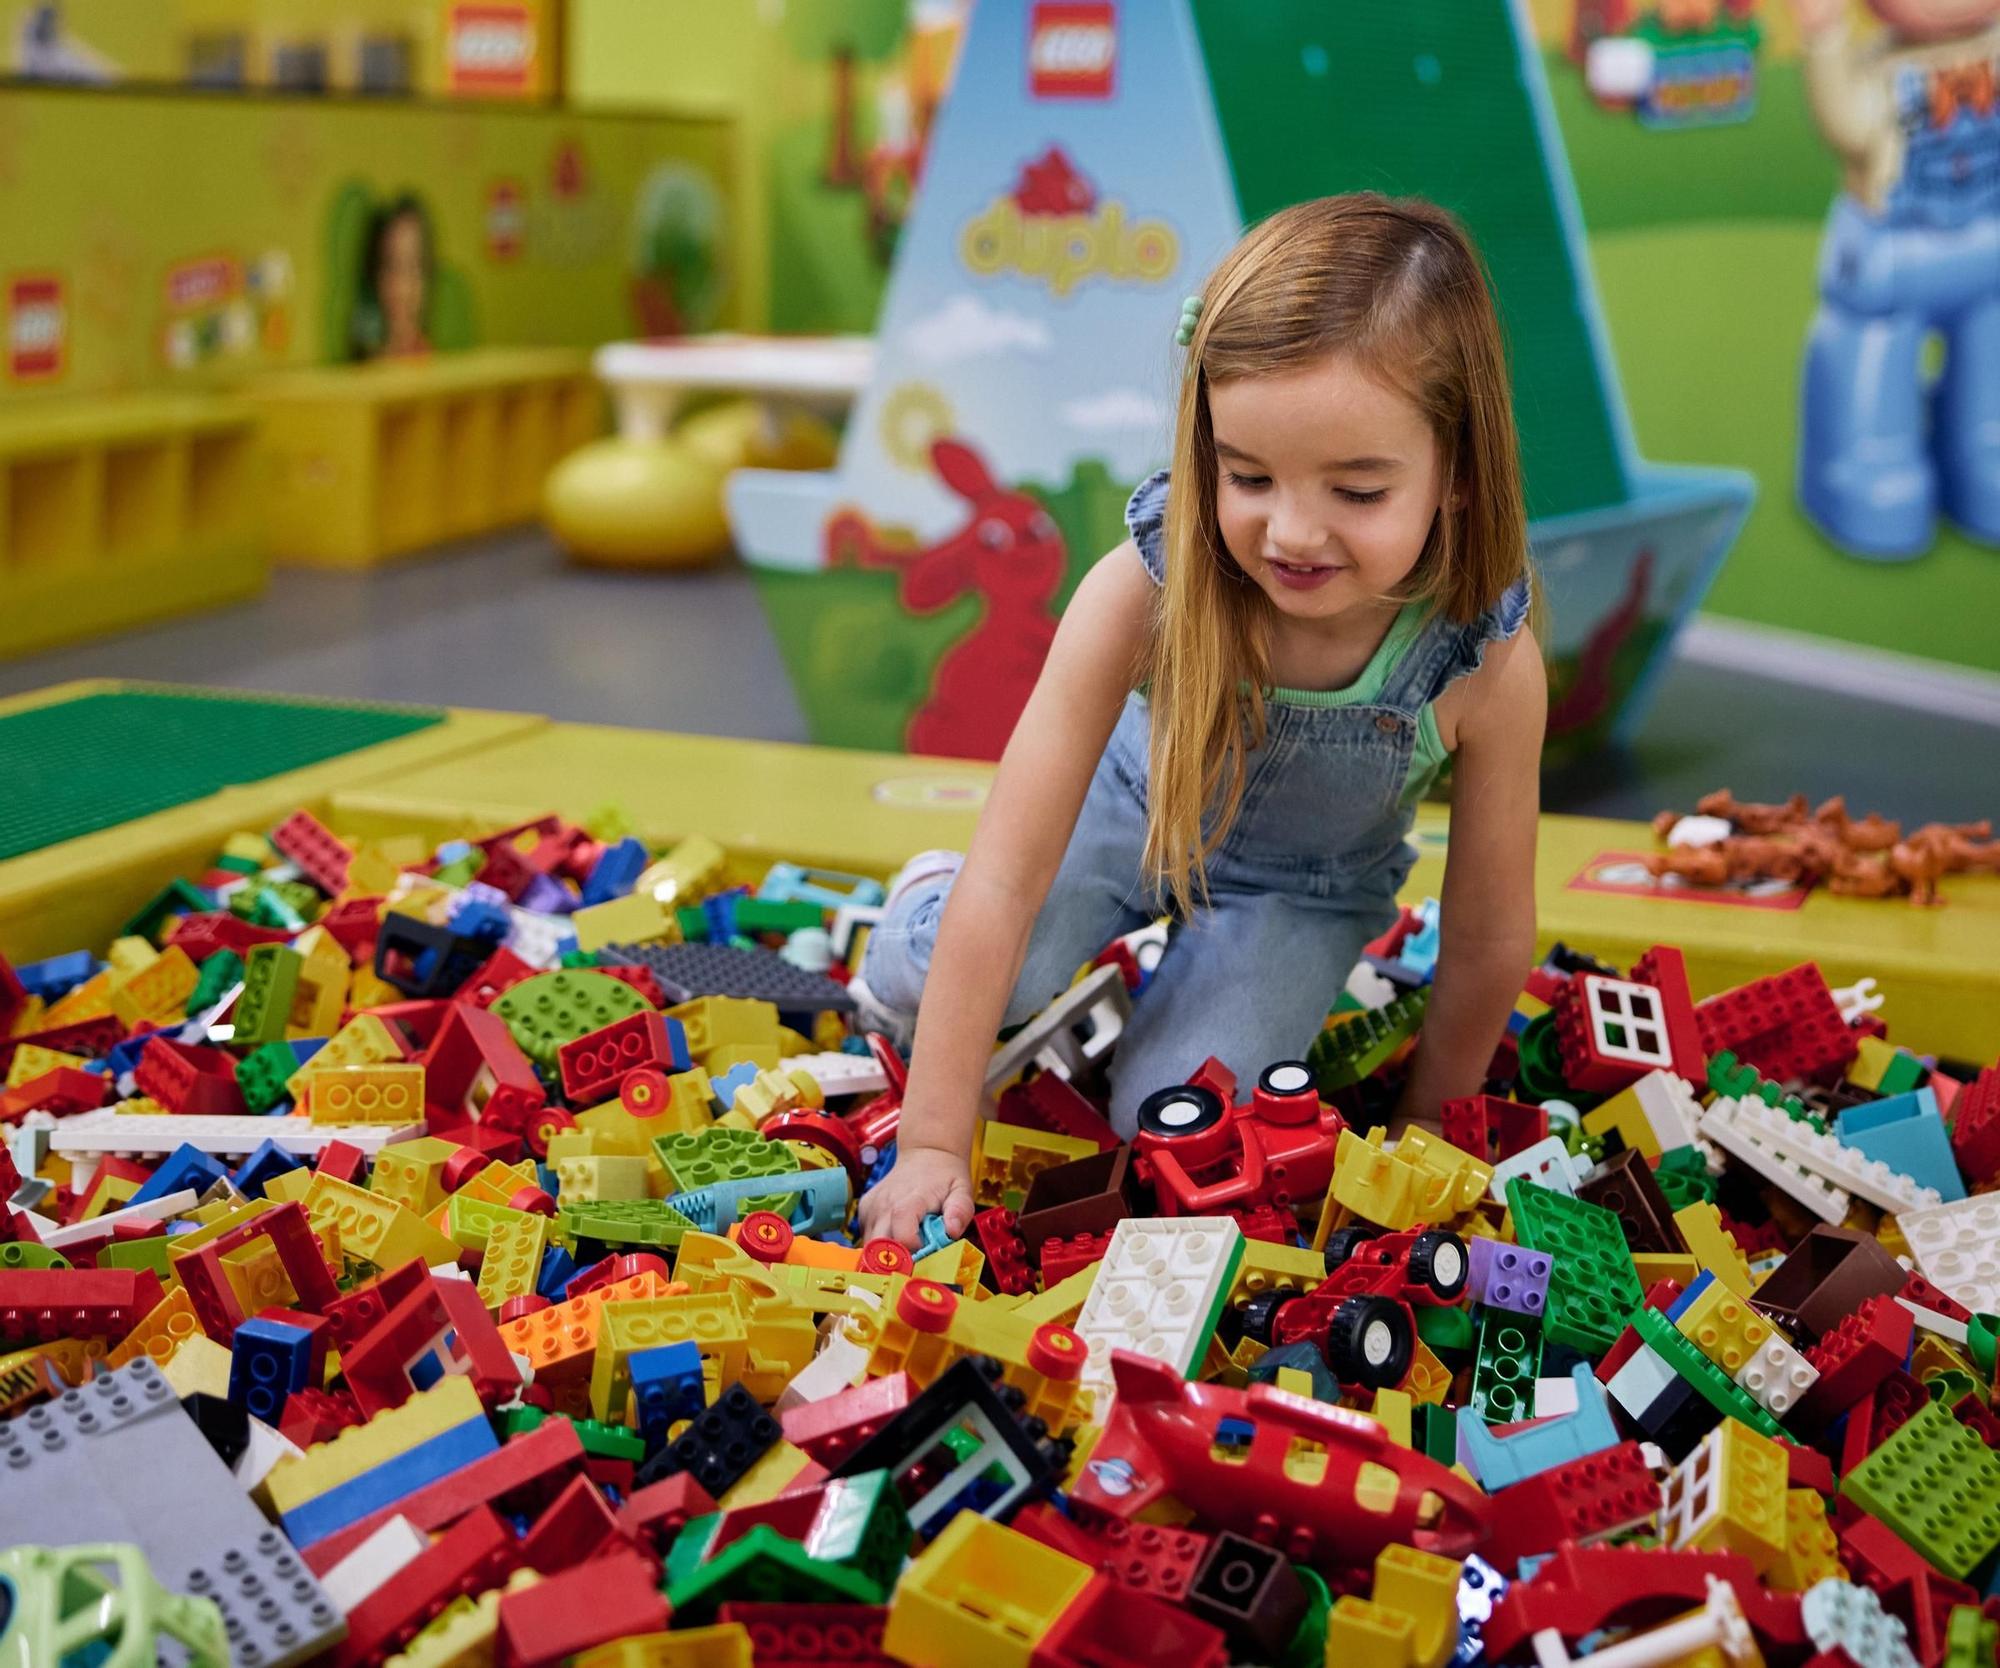 LEGO Fan Factory: diversión asegurada para niños y niñas este verano.